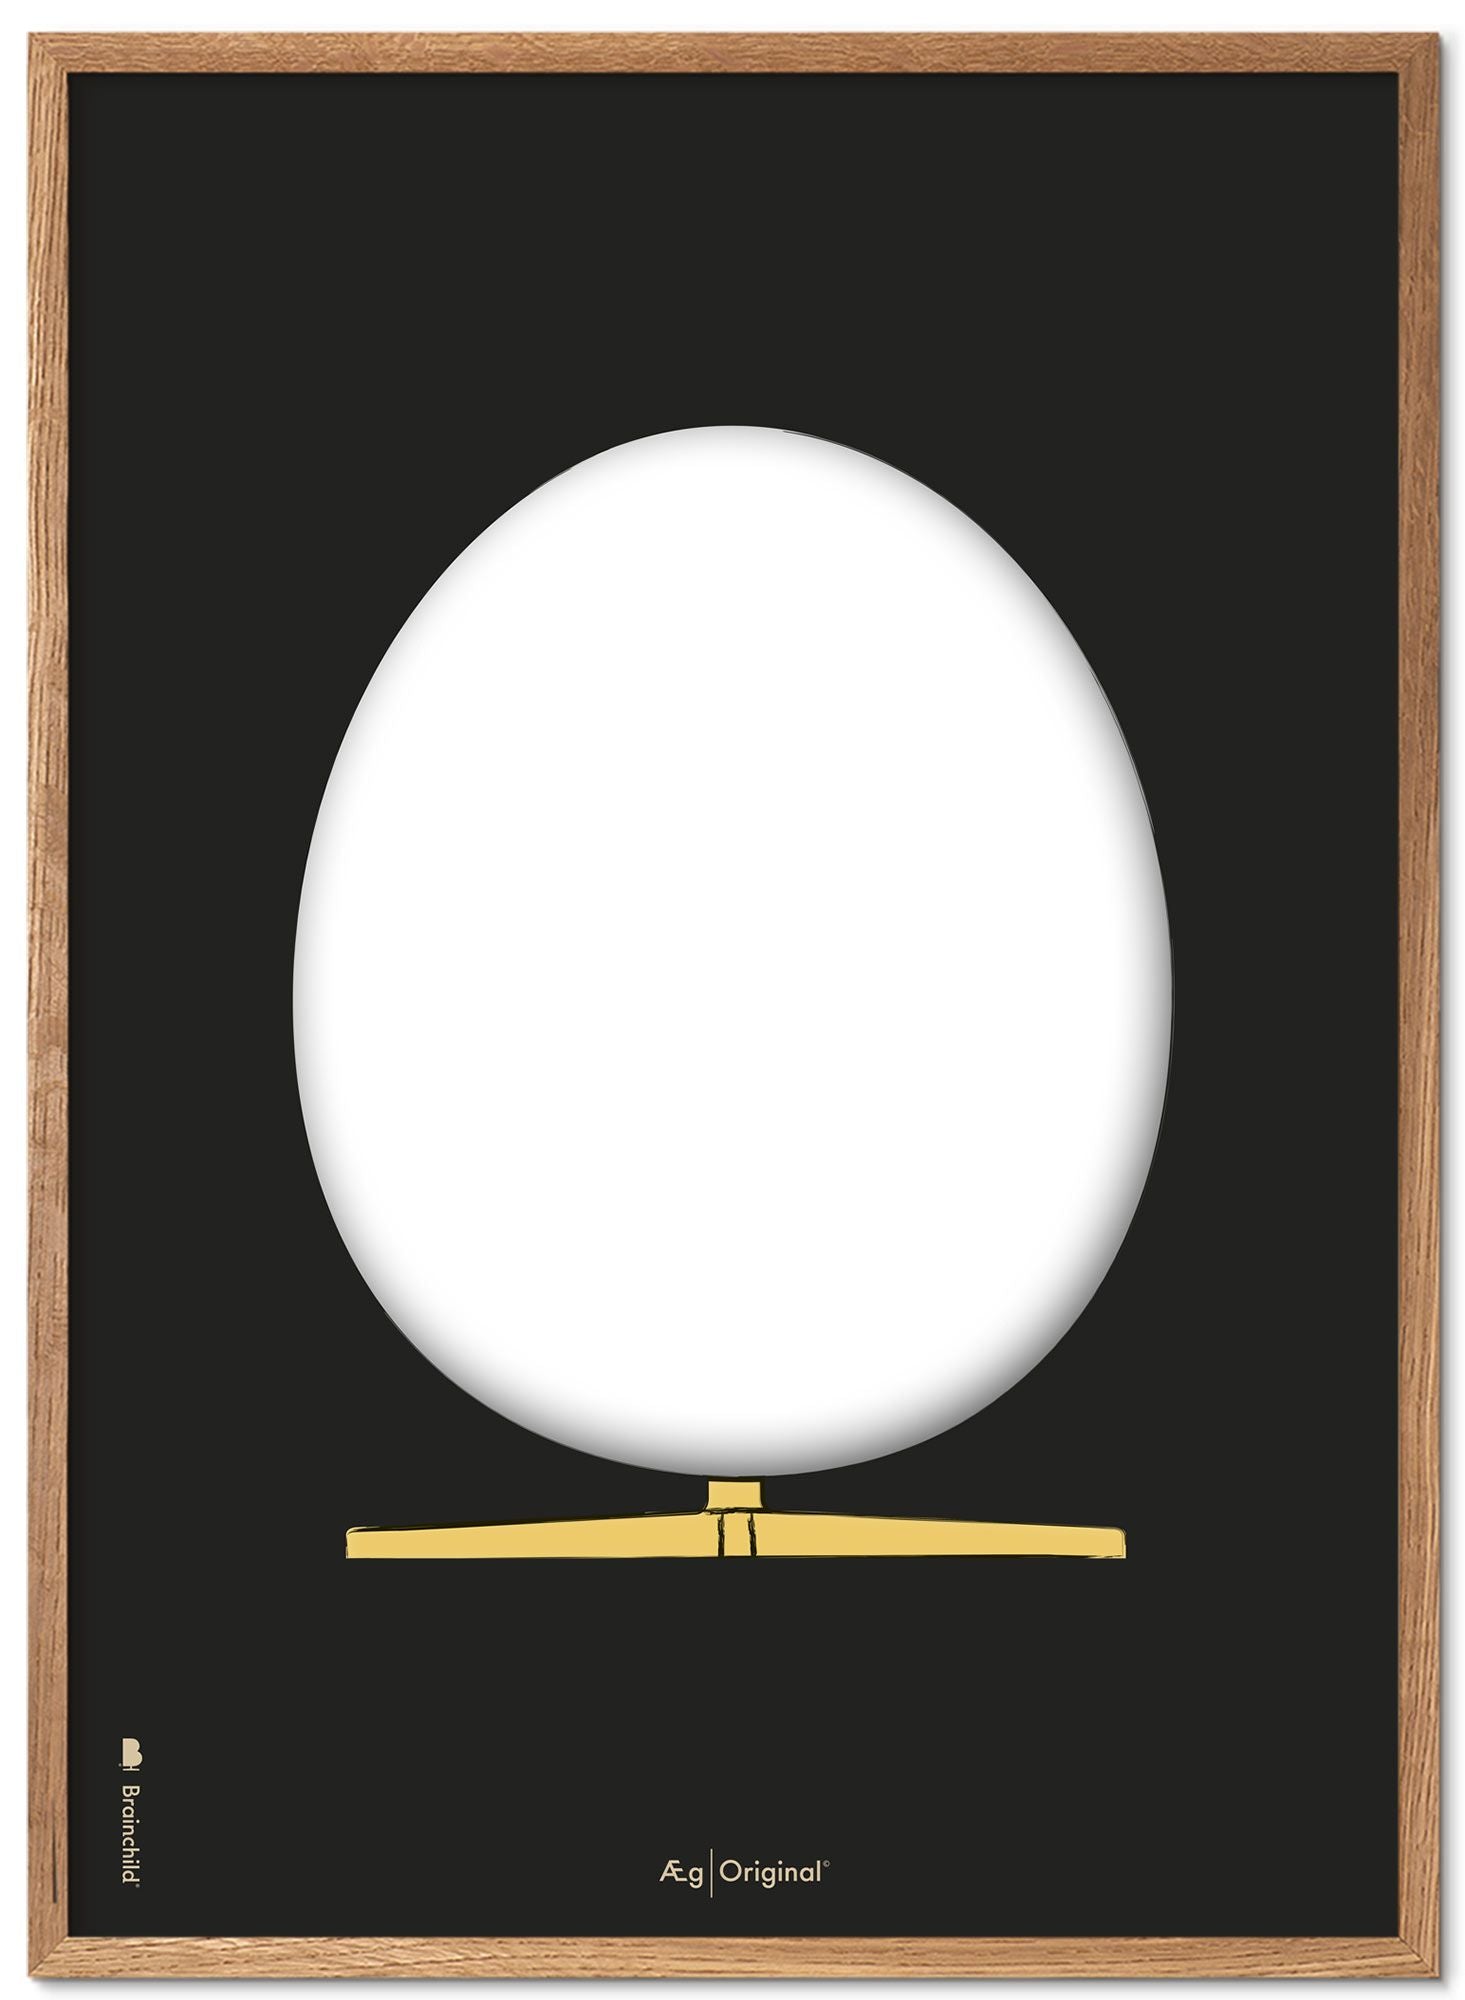 Brainchild The Egg Design Sketch Poster Frame Made Of Light Wood A5, Black Background